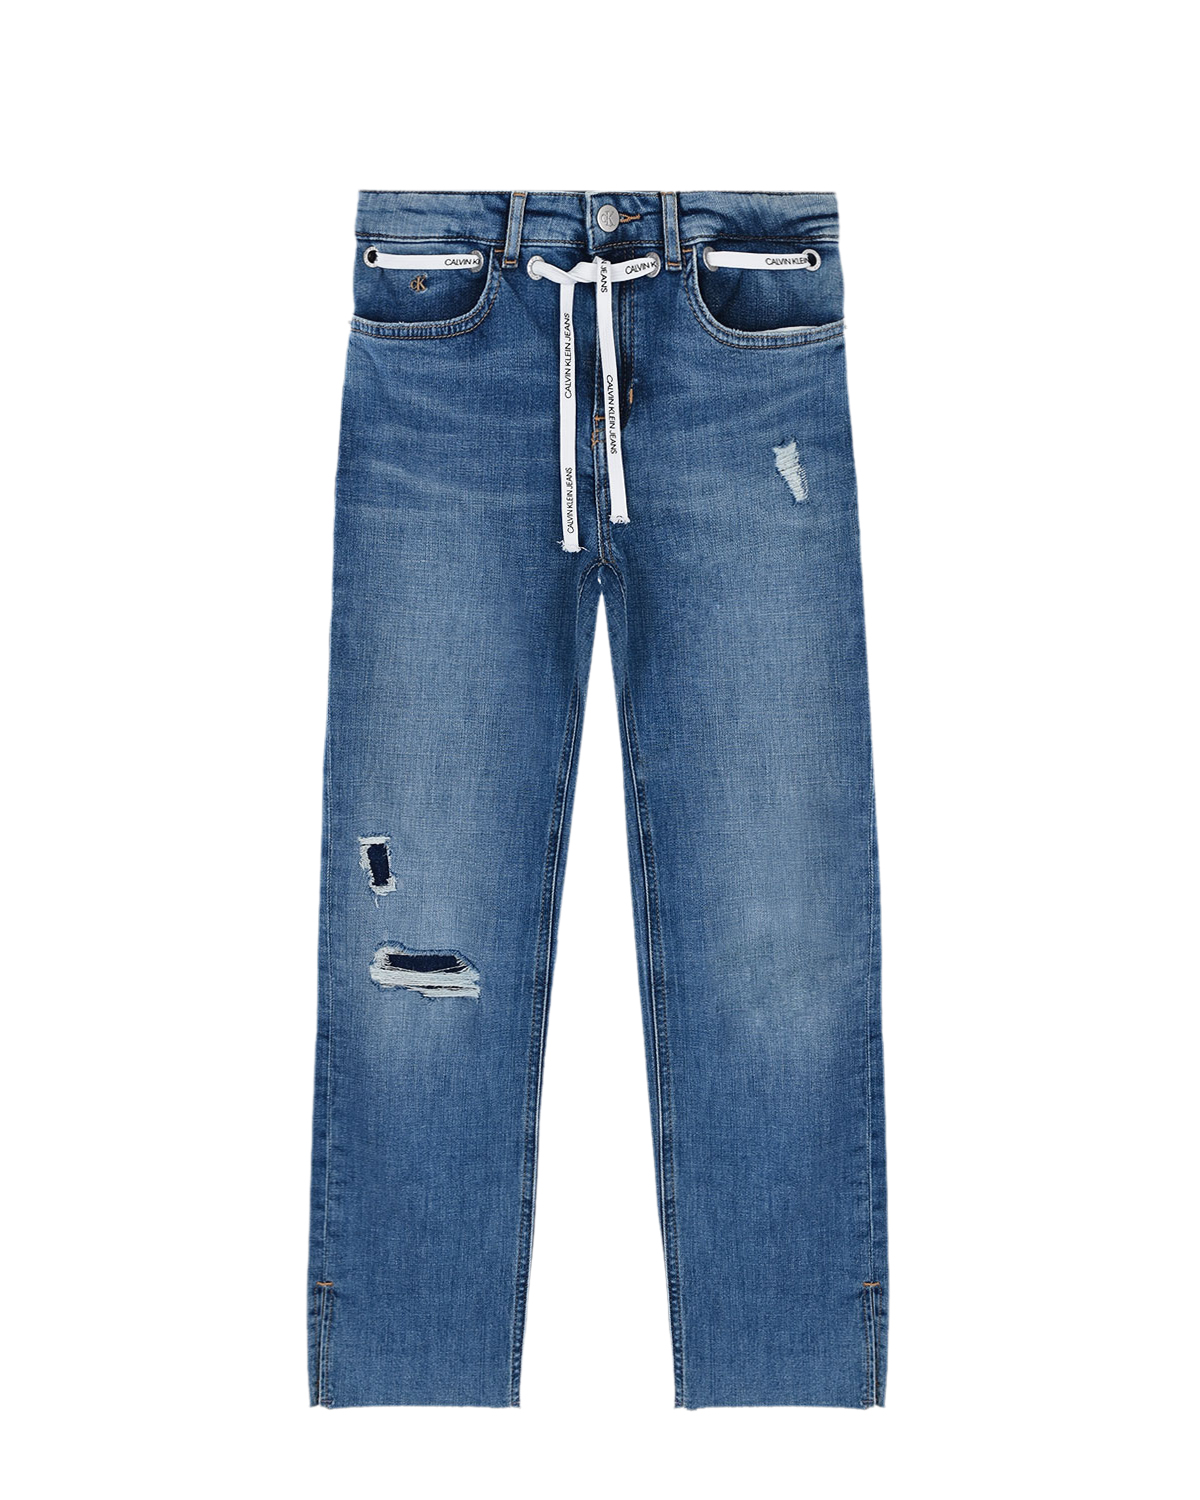 Голубые джинсы с белым шнурком Calvin Klein детские, размер 176, цвет голубой - фото 1